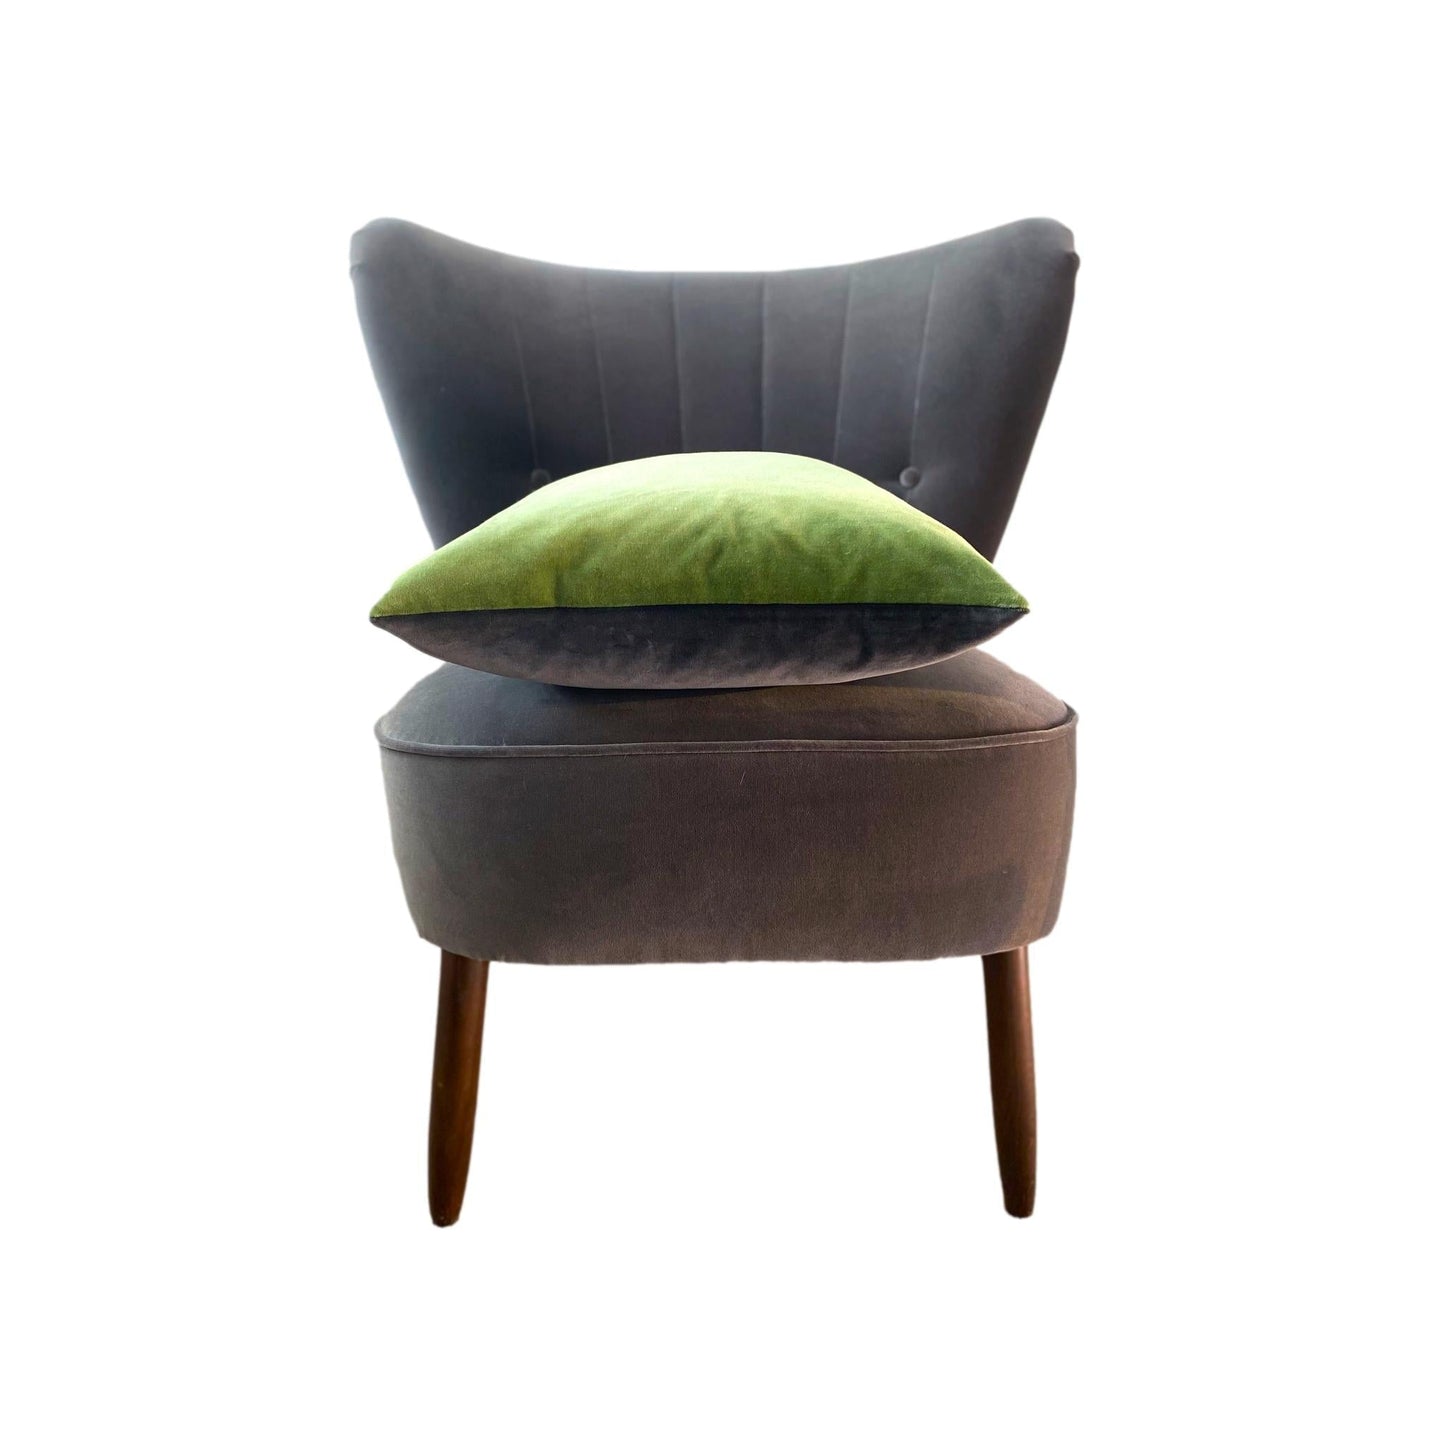 Sage Green Velvet Cushion with Dark Grey